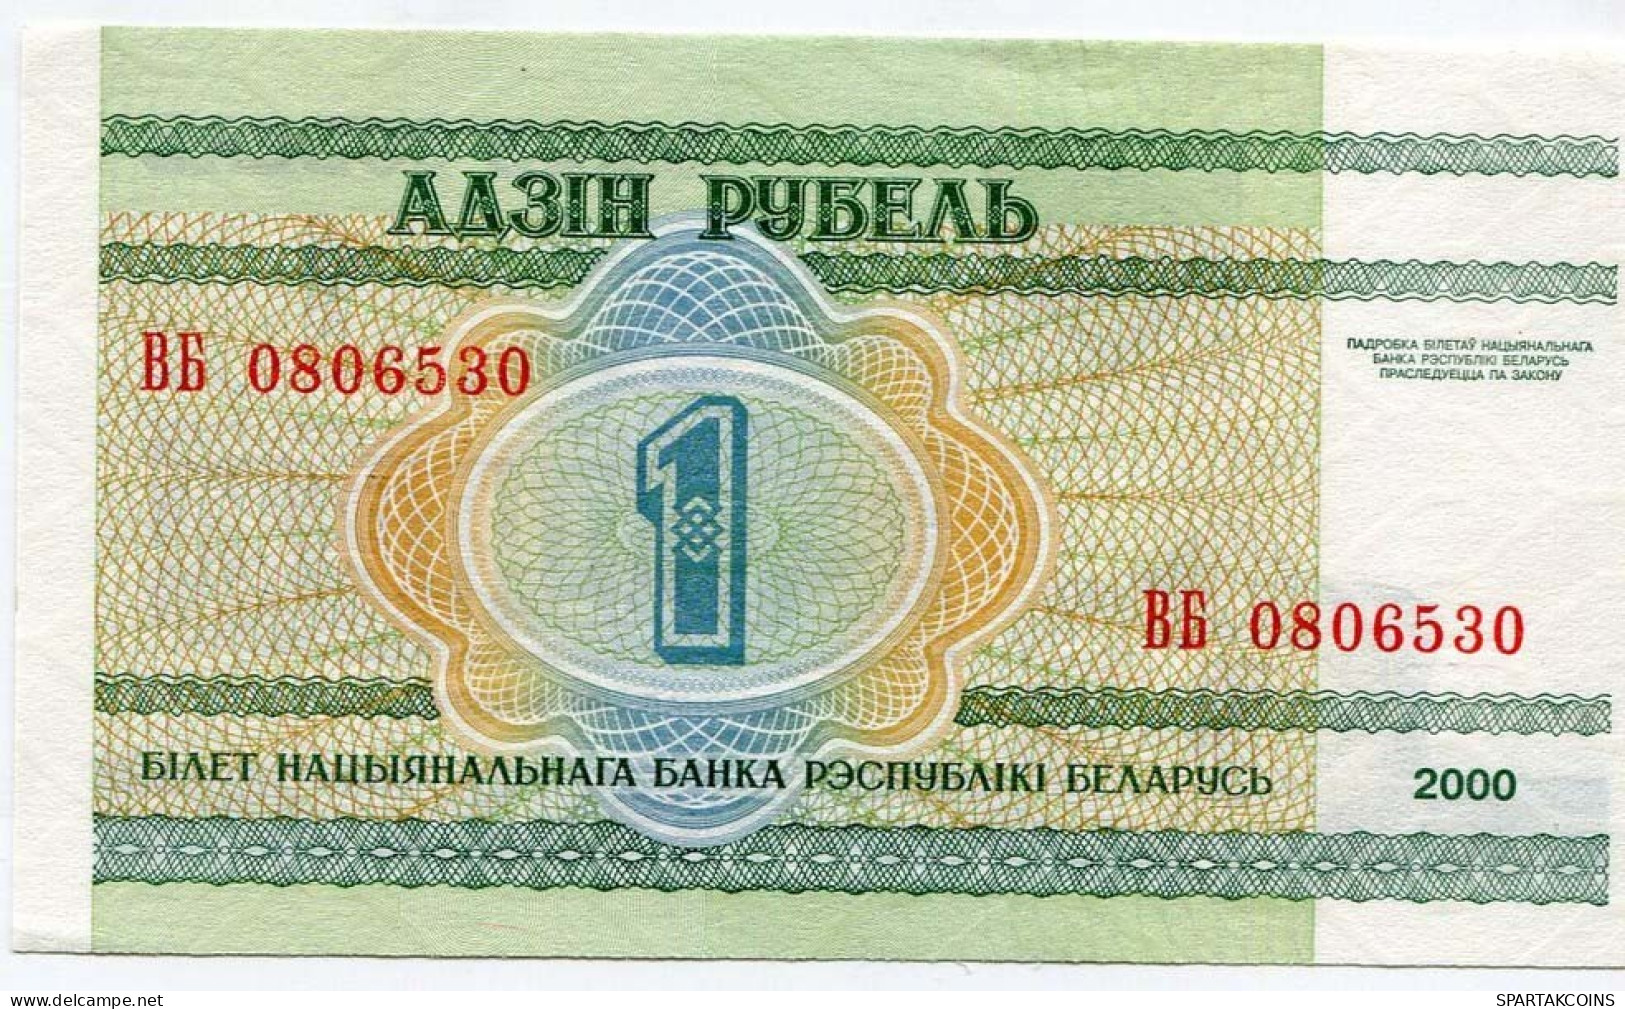 BELARUS 1 RUBLES 2000 National Academy Of Sciences Of Belarus Paper Money Banknote #P10198.V - Lokale Ausgaben